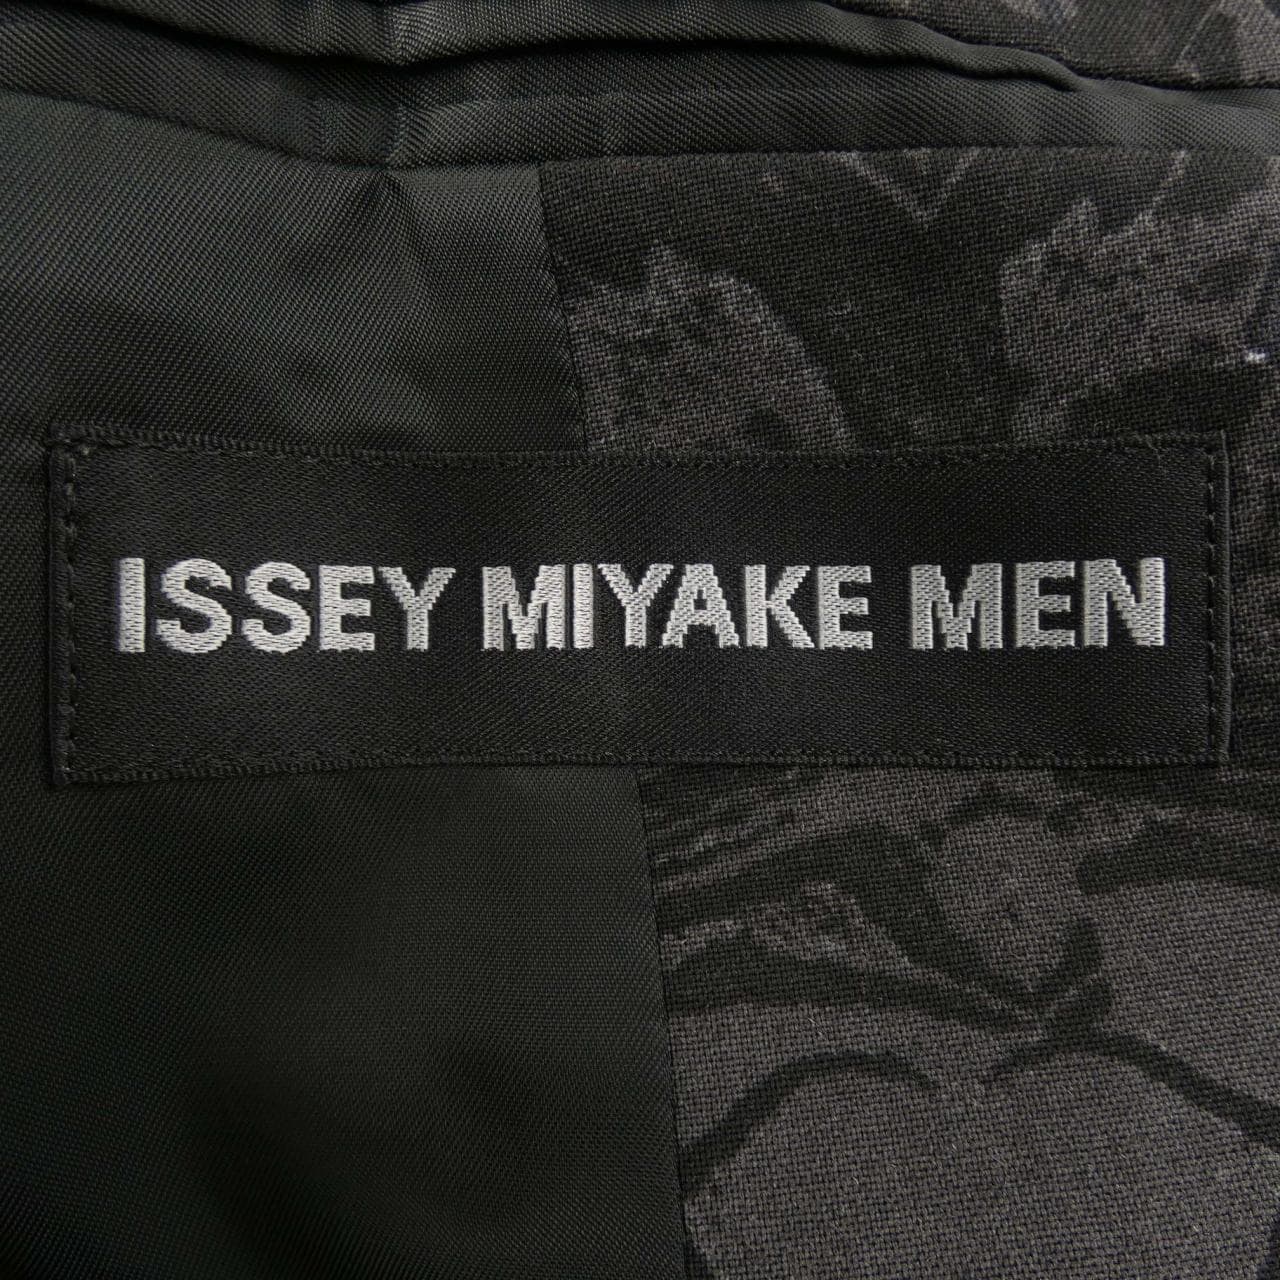 ISSEY MIYAKE MEN jacket